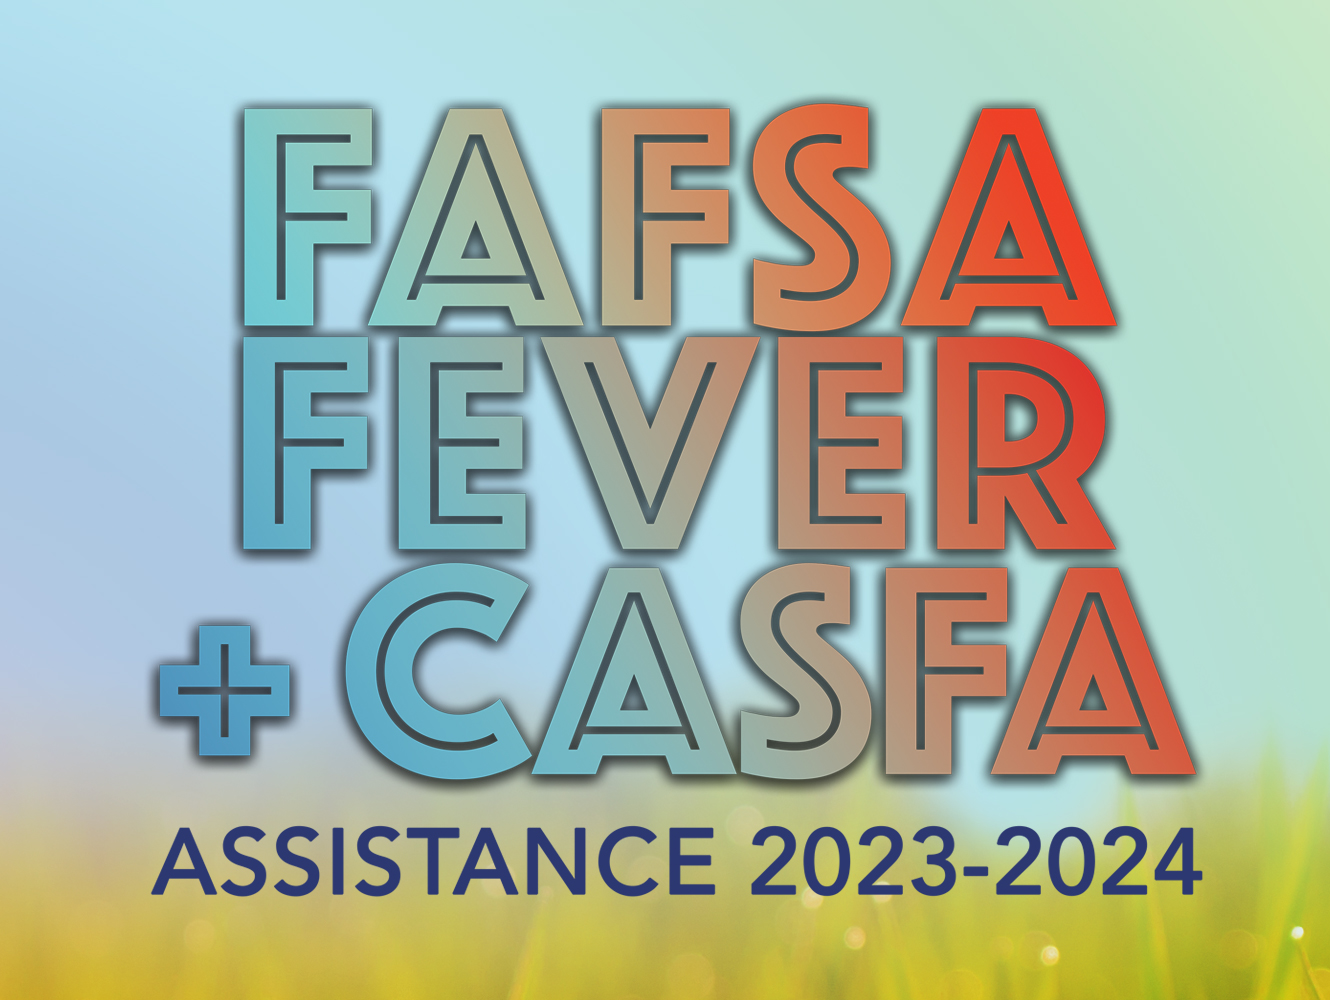 FAFSA Fever + CASFA Assistance 2023-2024 title